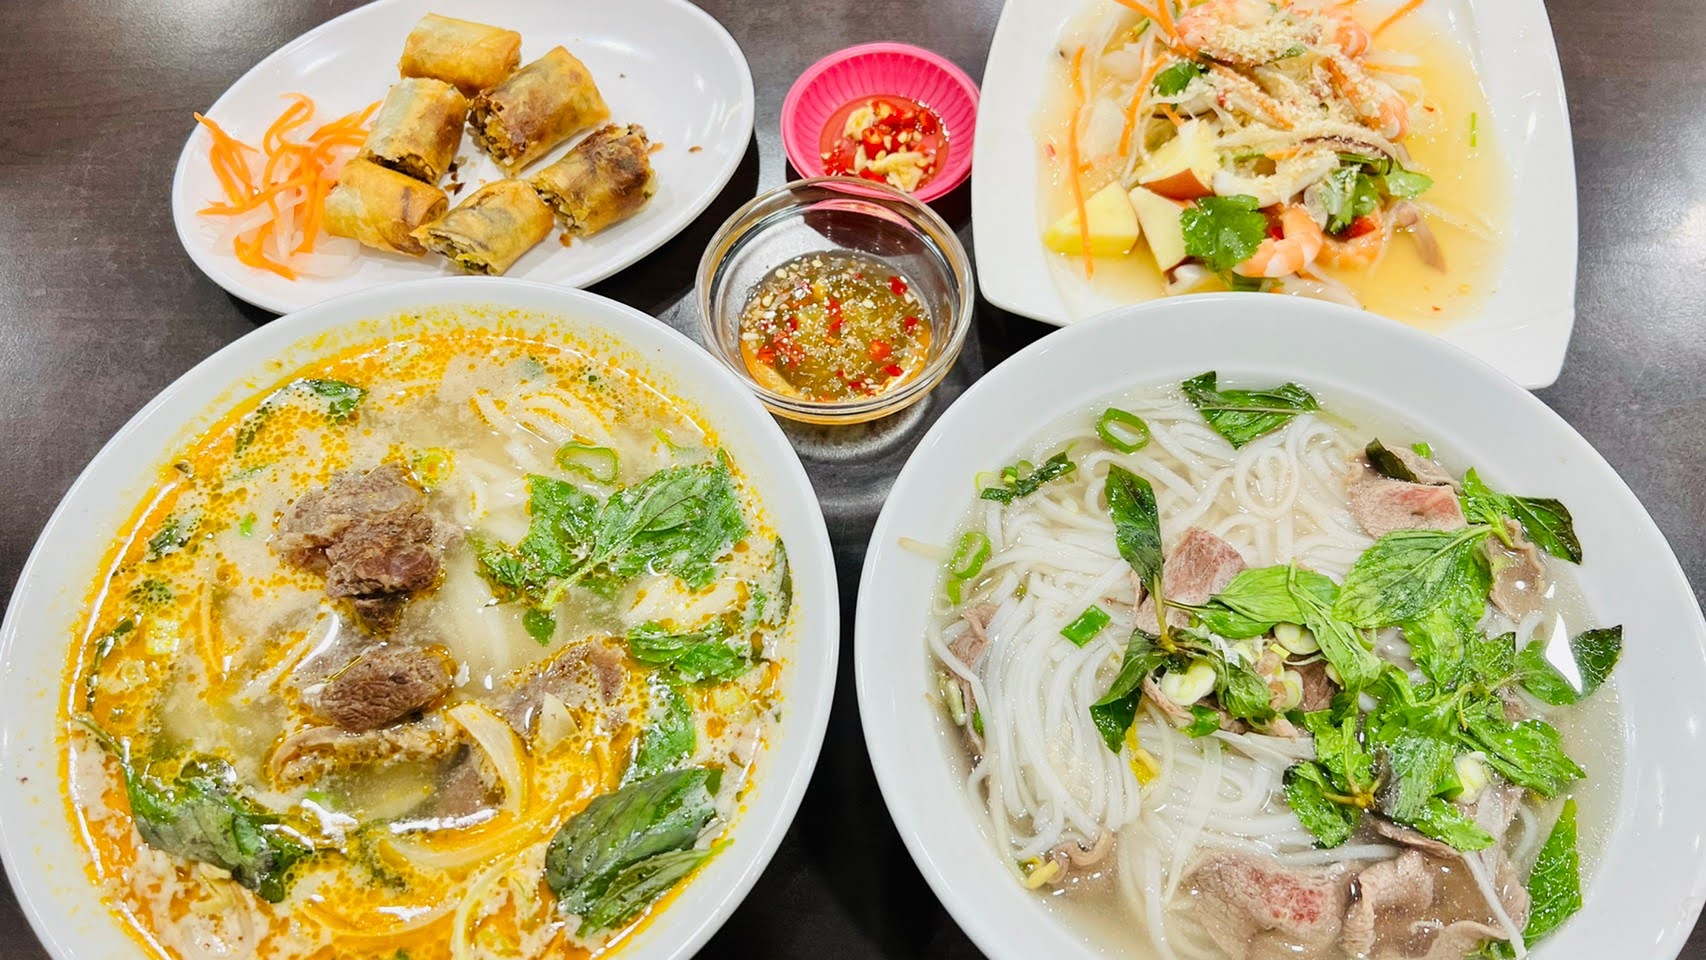 苗栗美食 西貢牛肉料理 竹南市場裡的越南料理 牛肉湯 河粉 炸春捲 涼拌沙拉